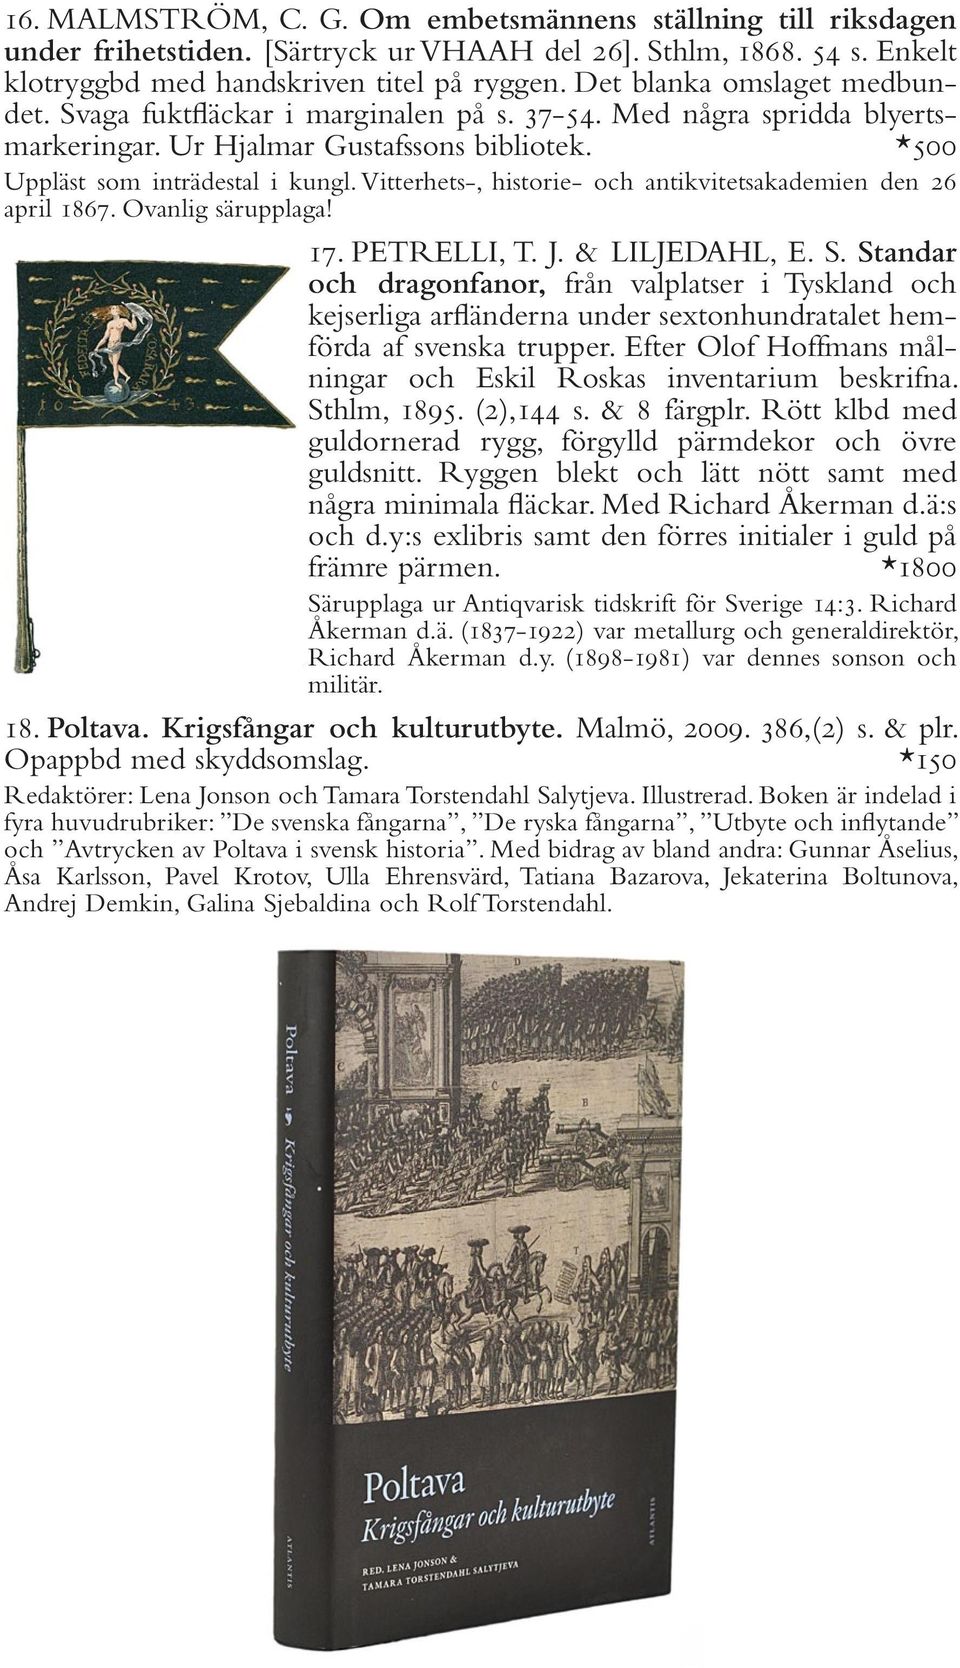 Vitterhets-, historie- och antikvitetsakademien den 26 april 1867. Ovanlig särupplaga! 17. PETRELLI, T. J. & LILJEDAHL, E. S.